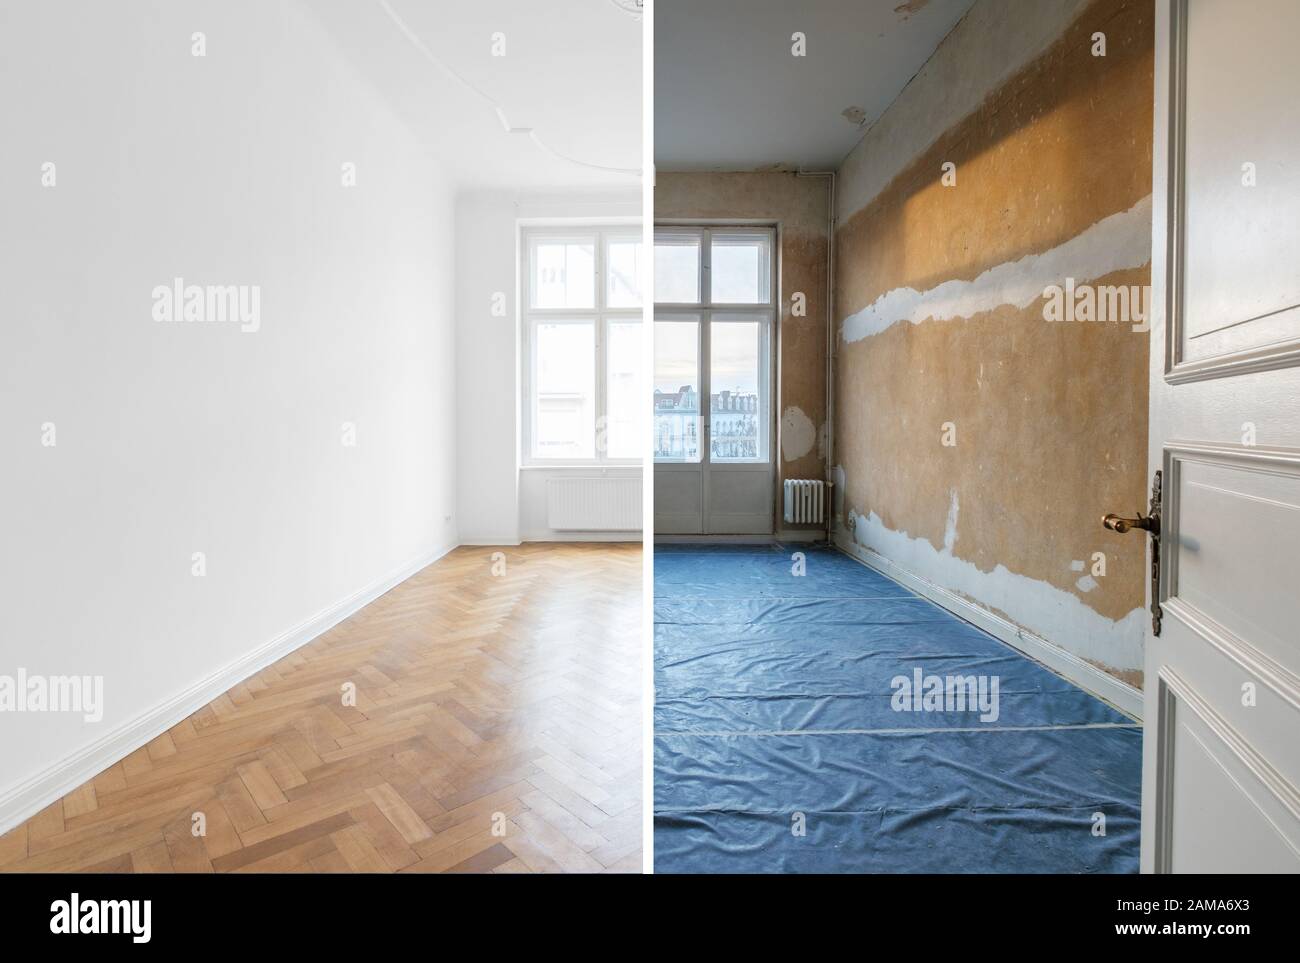 Leerer Raum vor und nach der Renovierung - Hausaufstellung Stockfoto